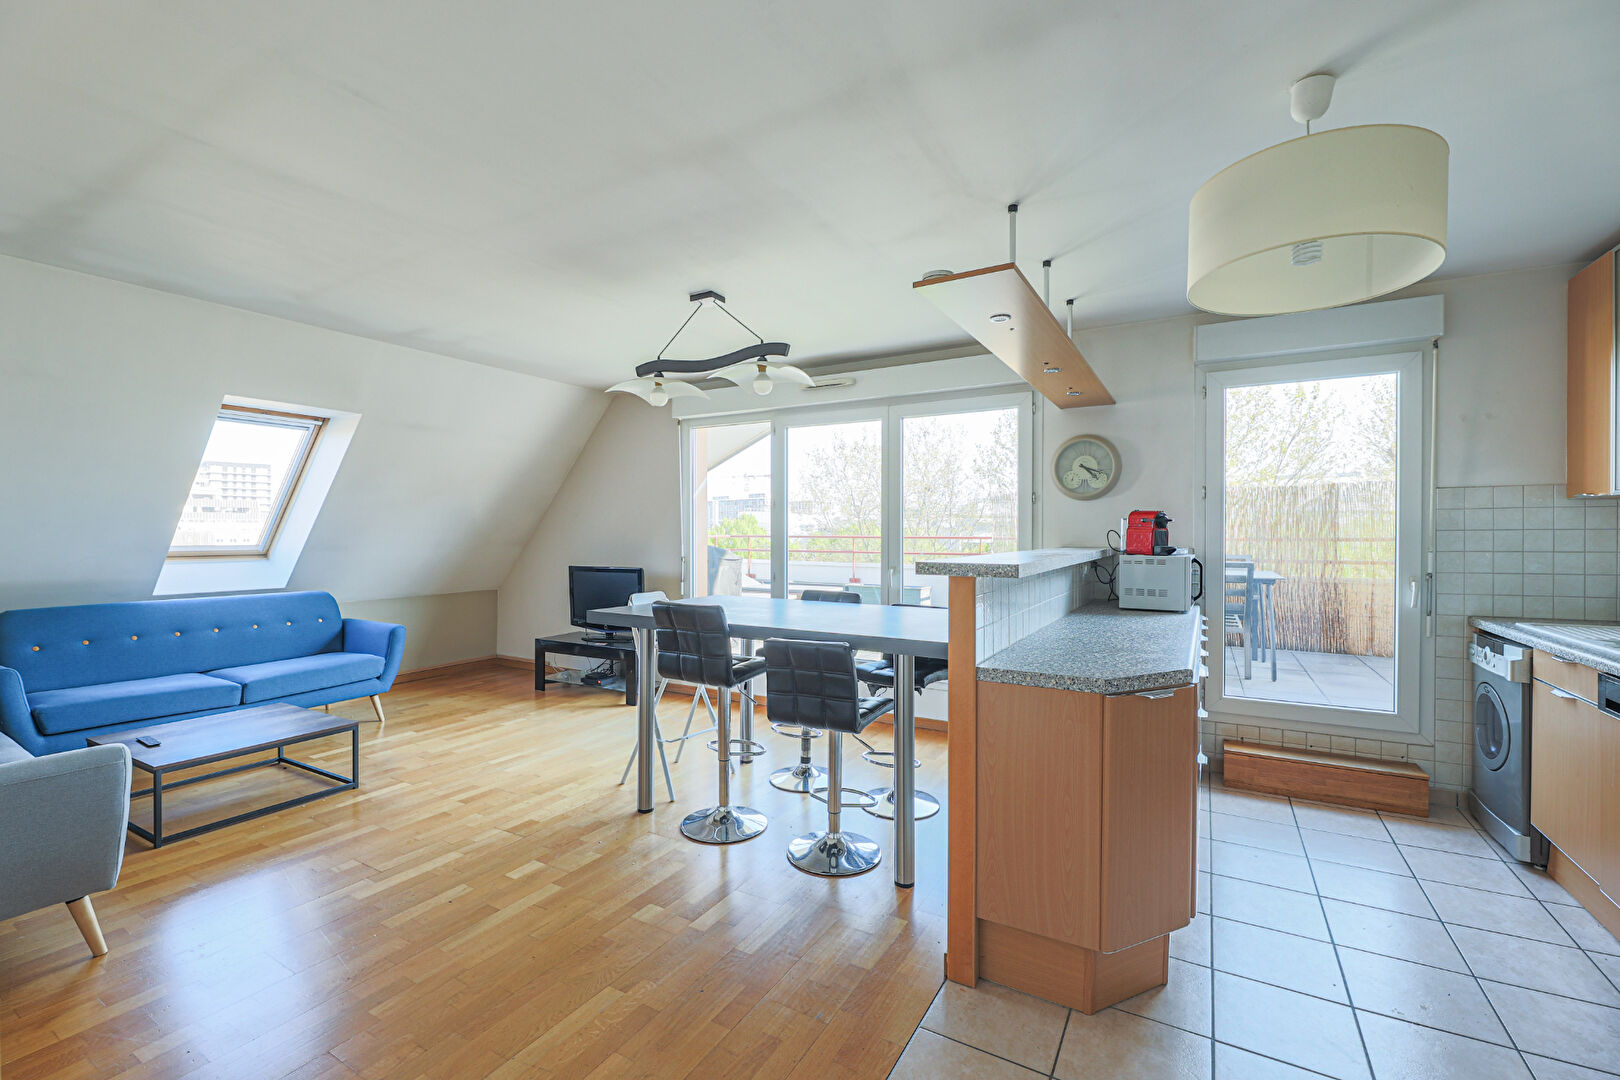 Appartement familial de 74 m² environs en dernier étage avec terrasse! 1